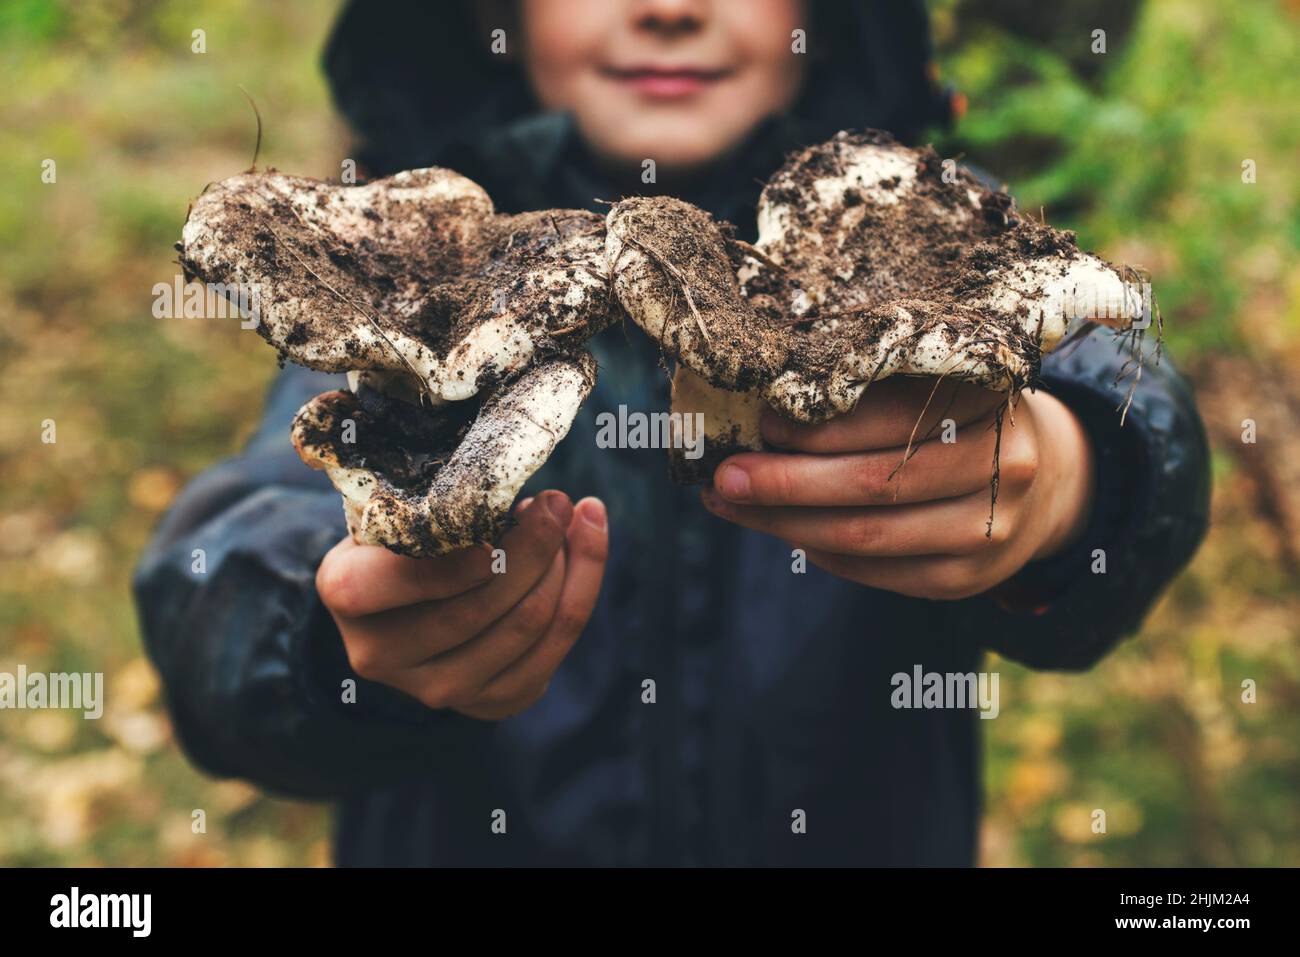 Le mani dei bambini tengono i funghi. Alla ricerca di funghi nella foresta. Le mani dei capretti tengono i funghi grandi nella foresta in autunno. Picki fungo della Foresta Foto Stock